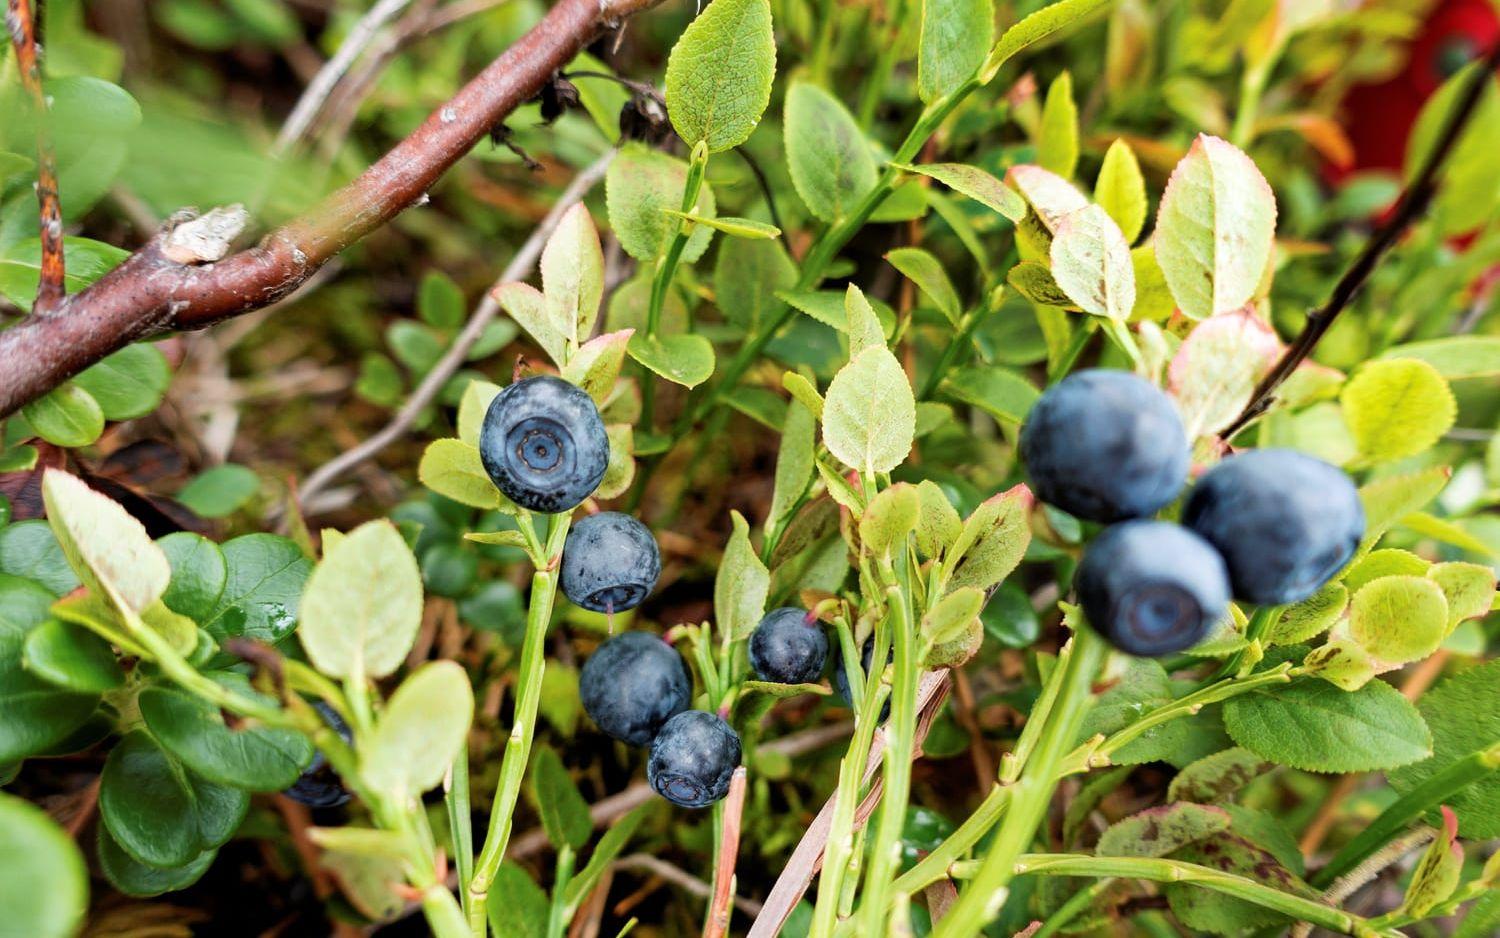 I barrskogstrakter är blåbärsblommor och lingonblommor en viktig näringsresurs. 